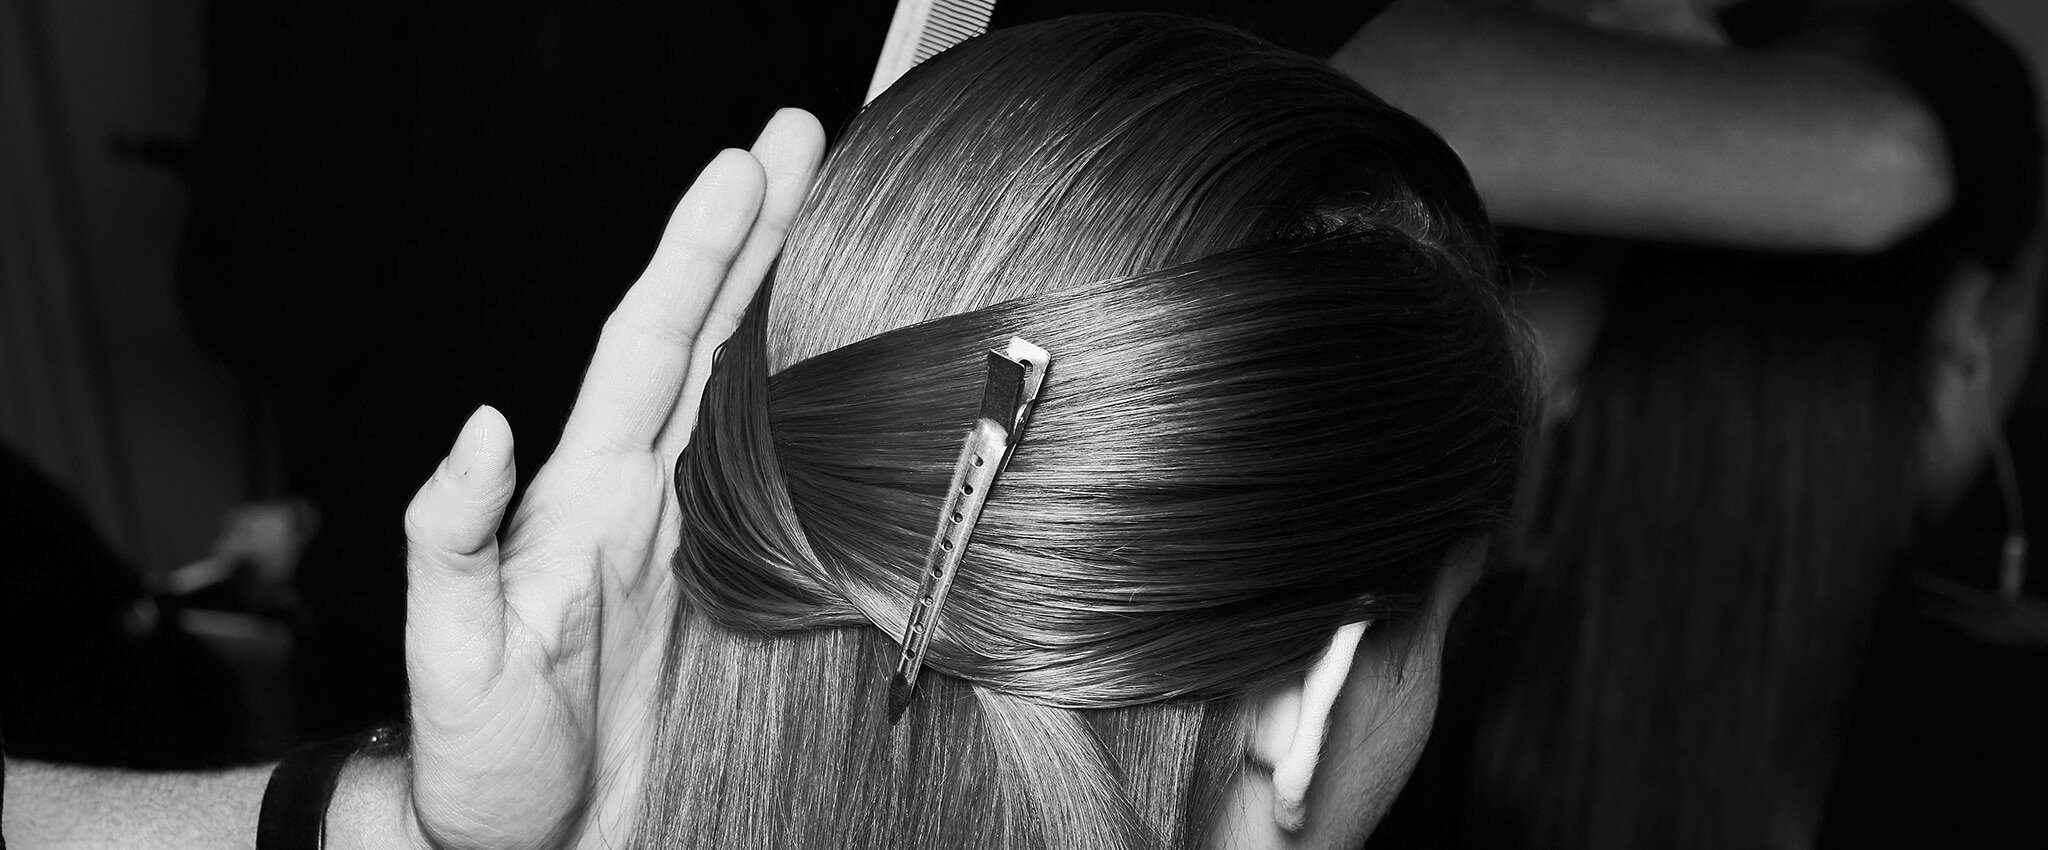 Sort-hvidt nærbillede af en models baghoved, hvor håret i siderne er samlet i en hårklemme bagpå, og en stylists hænder med en kam, som knapt er synlig